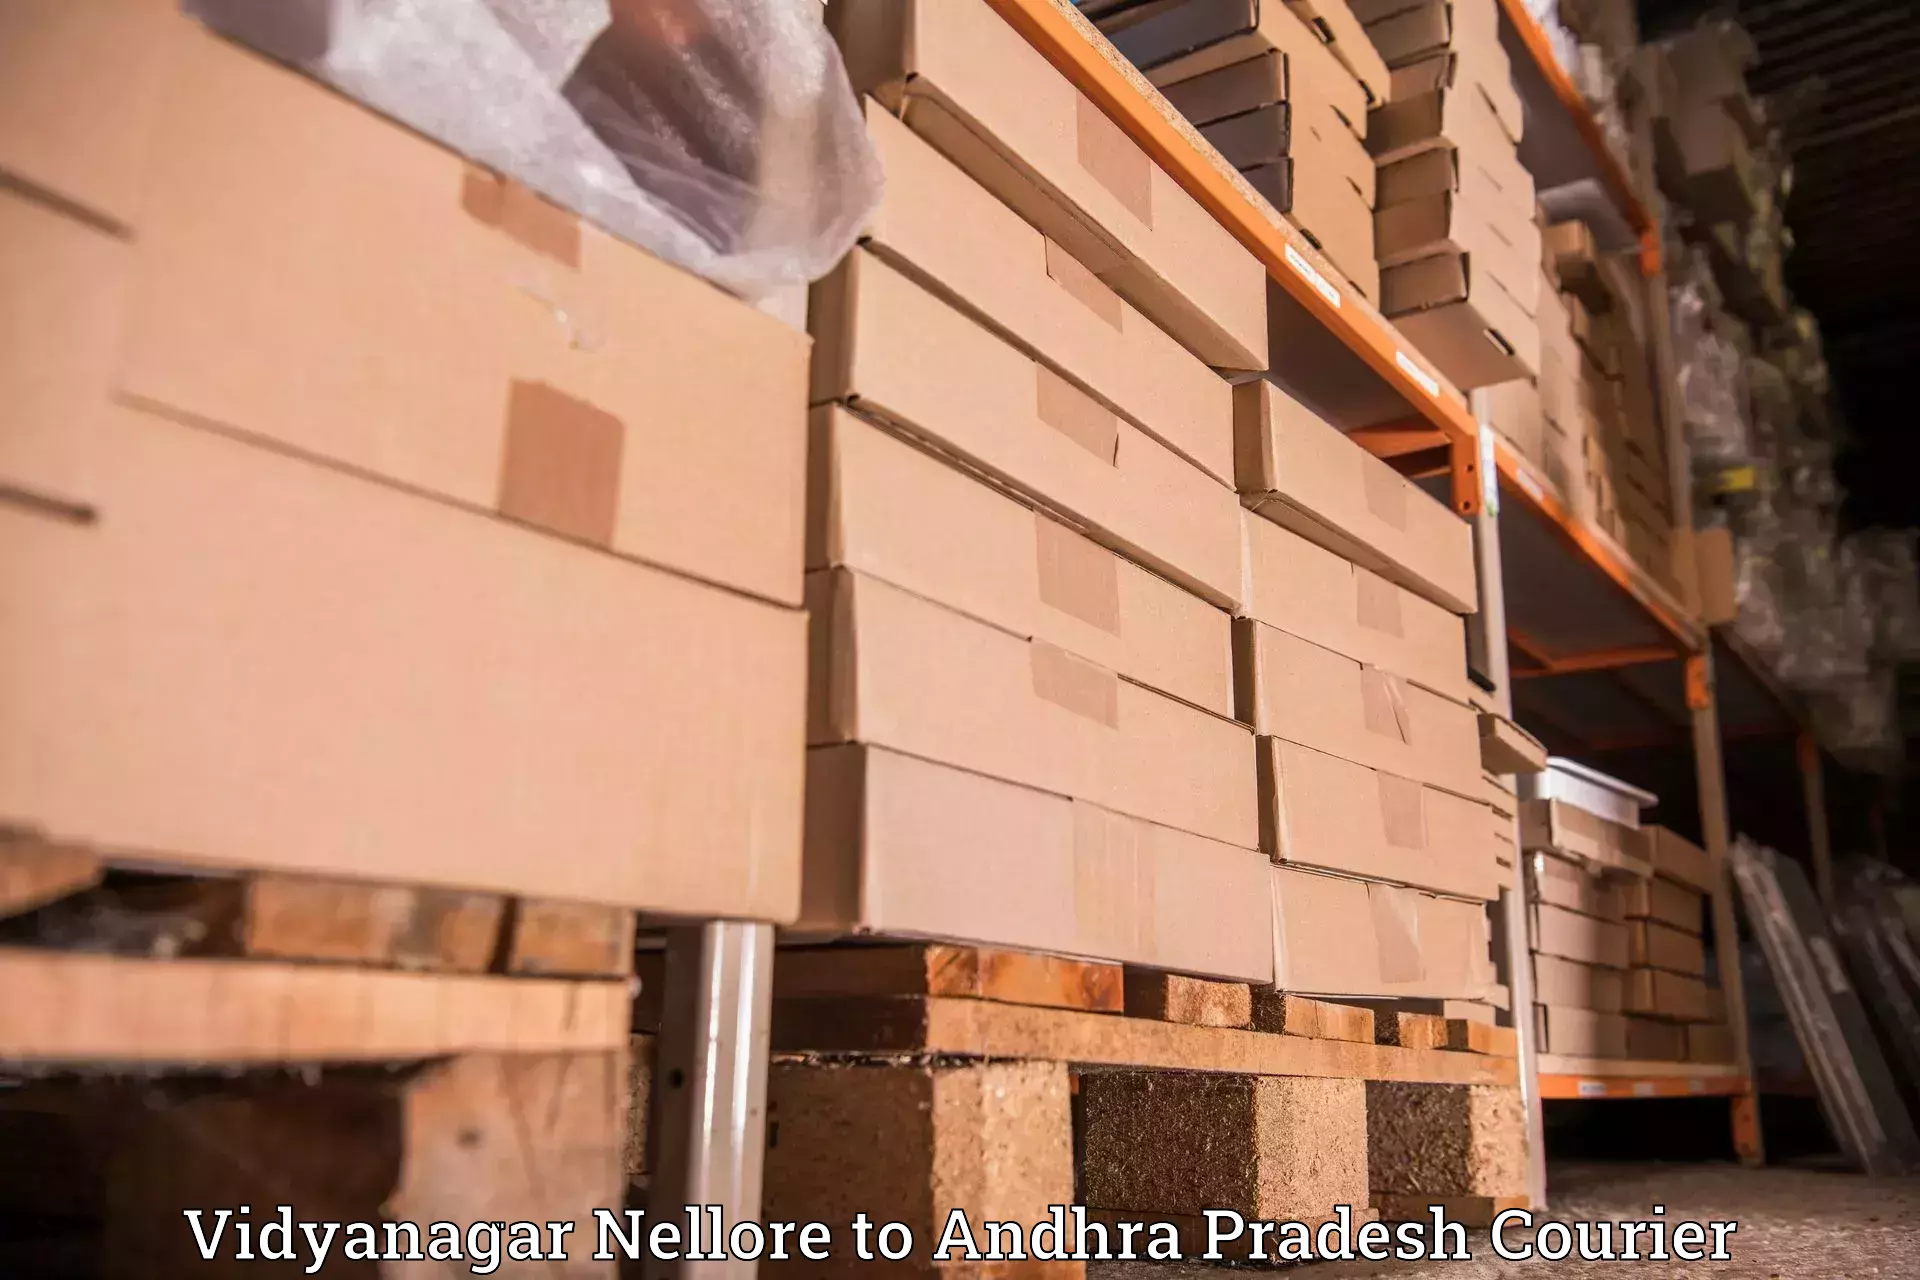 Ocean freight courier Vidyanagar Nellore to Eluru